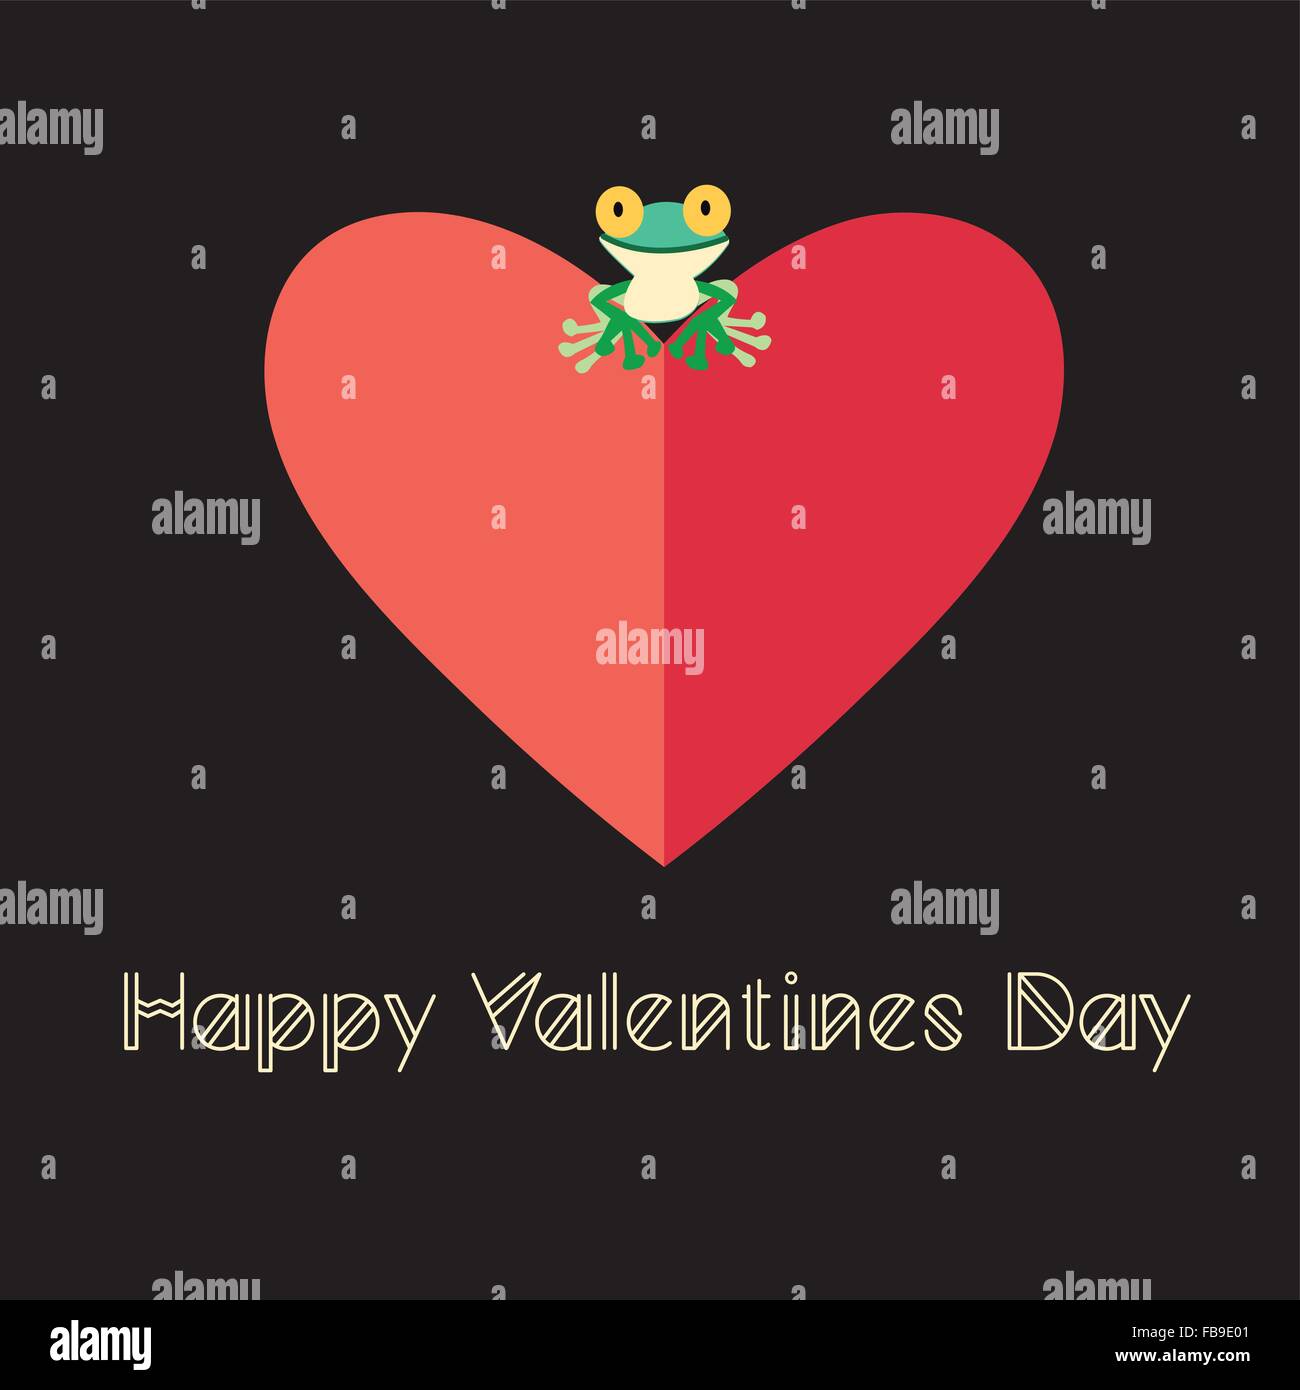 Vektor-Illustration eines schönen Liebe Frosch auf ein rotes Herz Stock Vektor